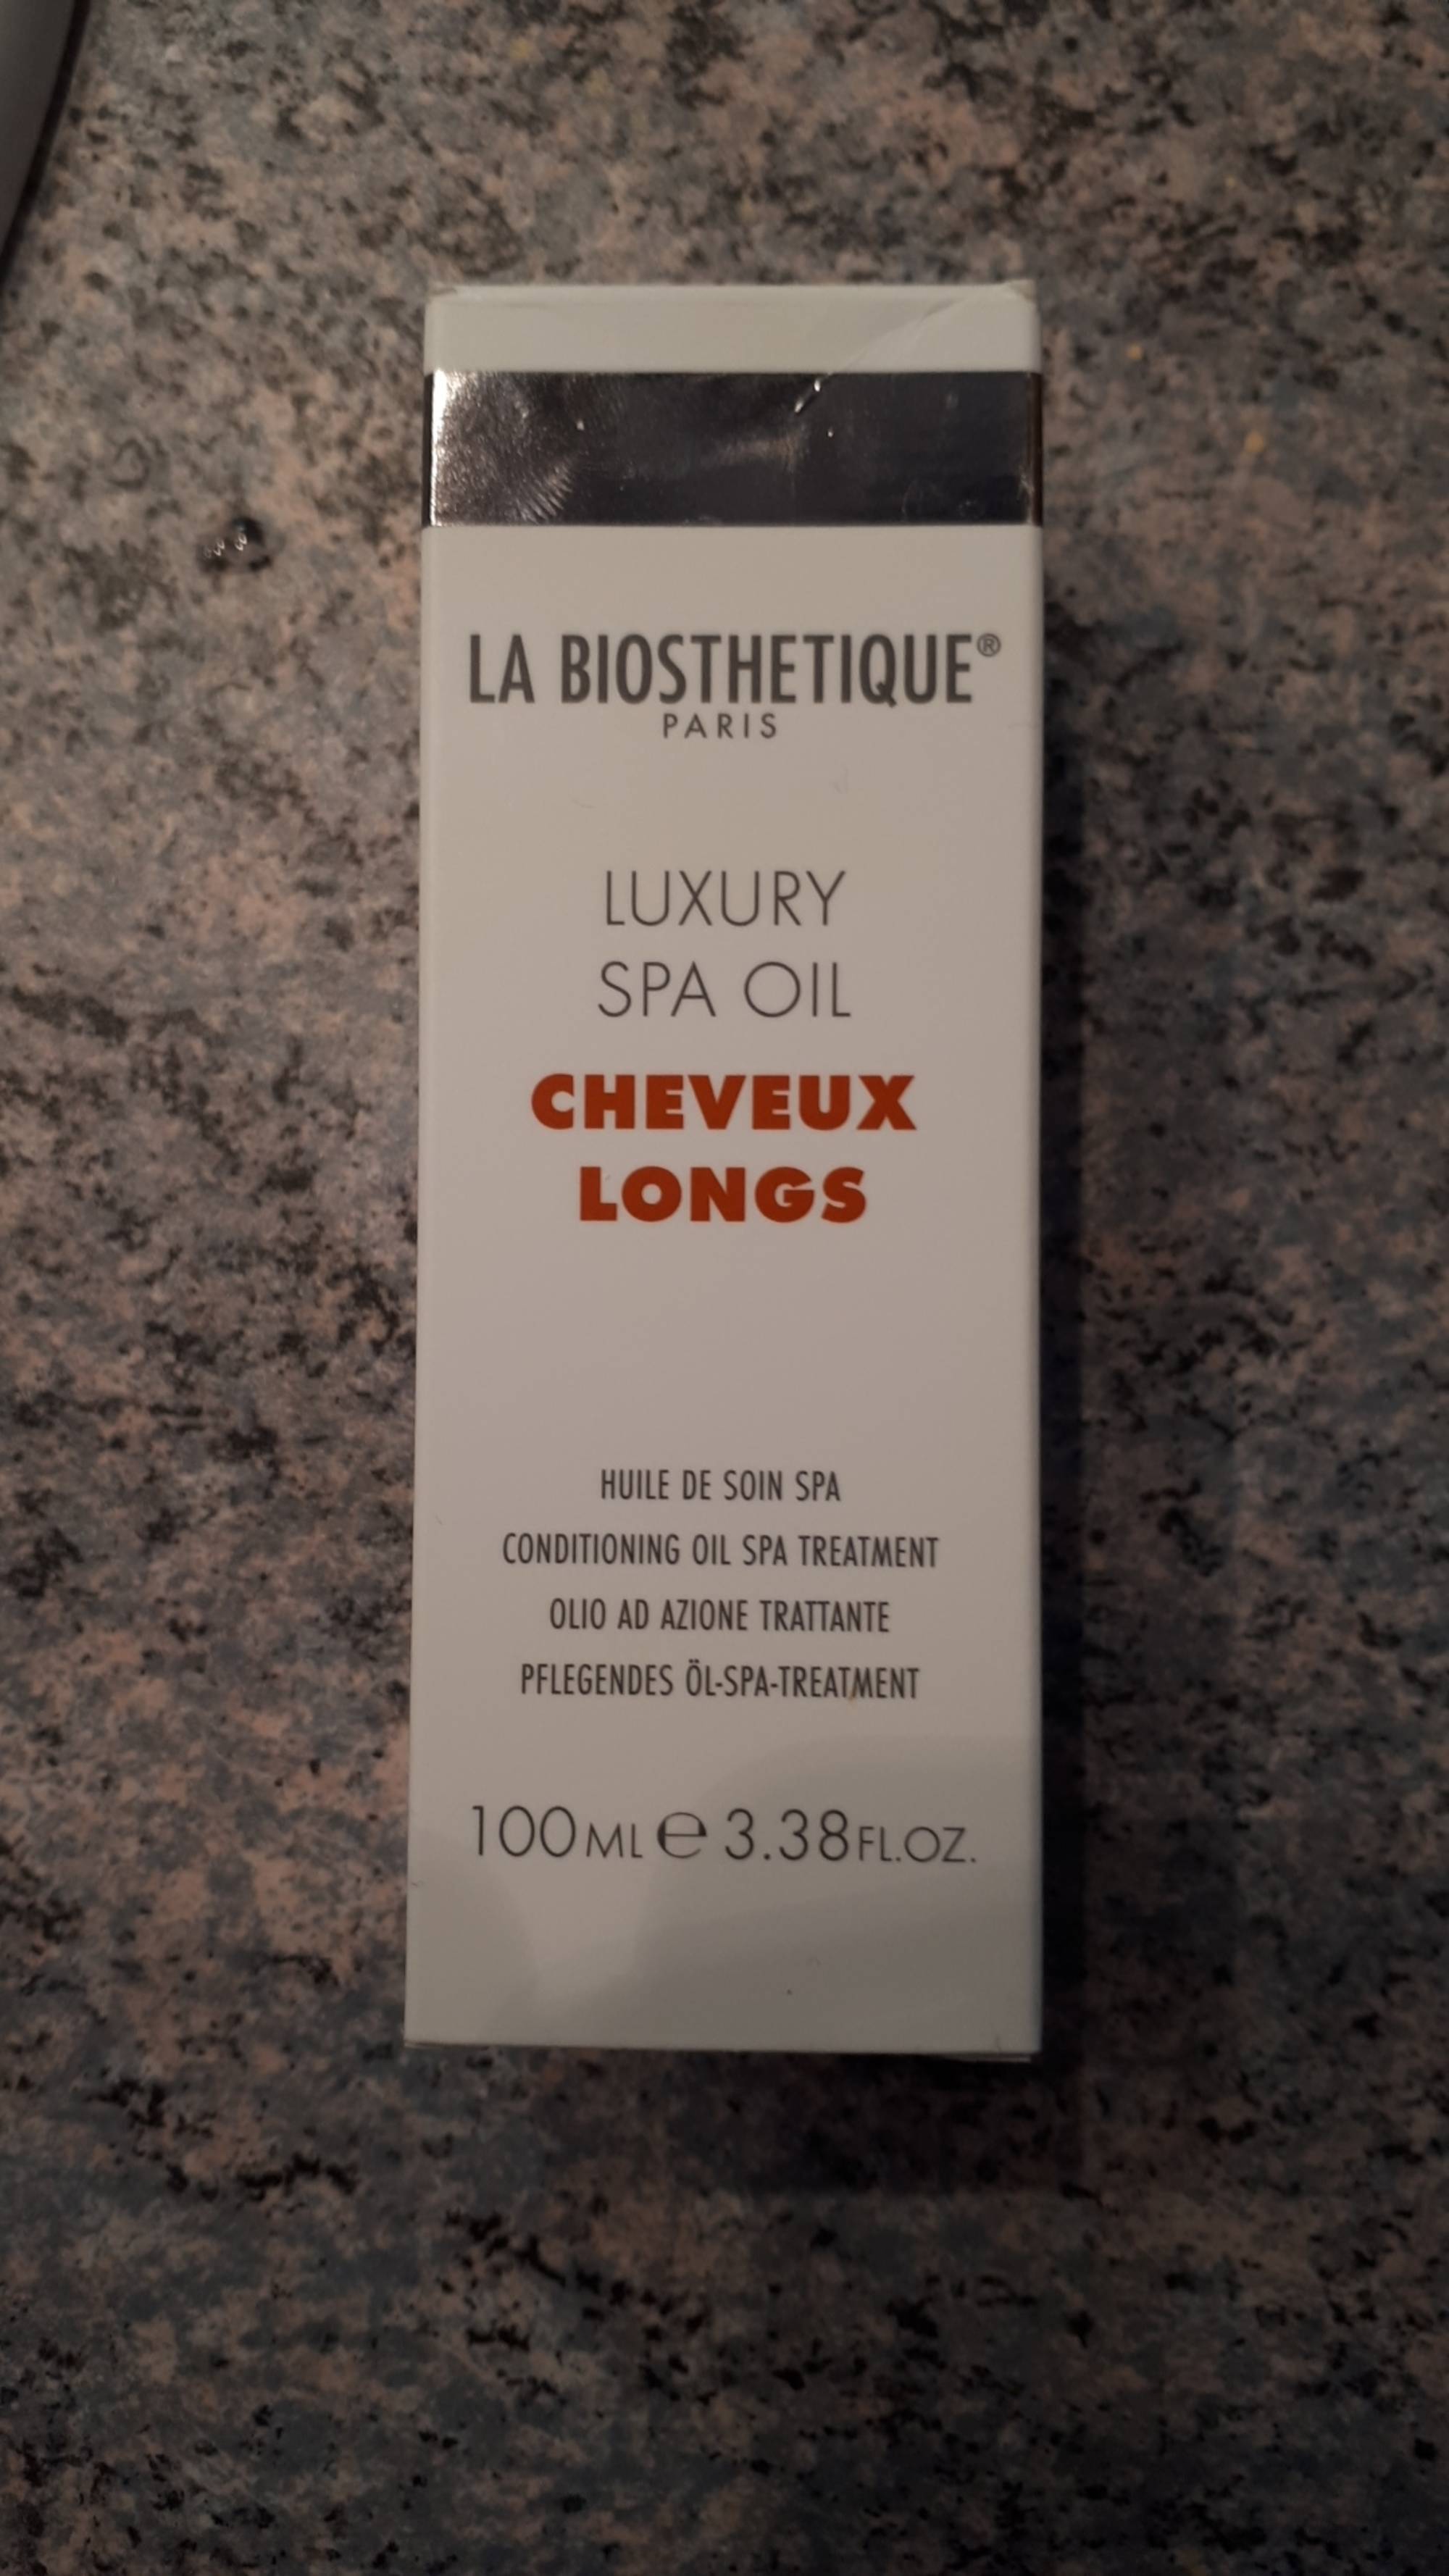 LA BIOSTHETIQUE PARIS - Luxury Spa Oil - Huile de soin spa